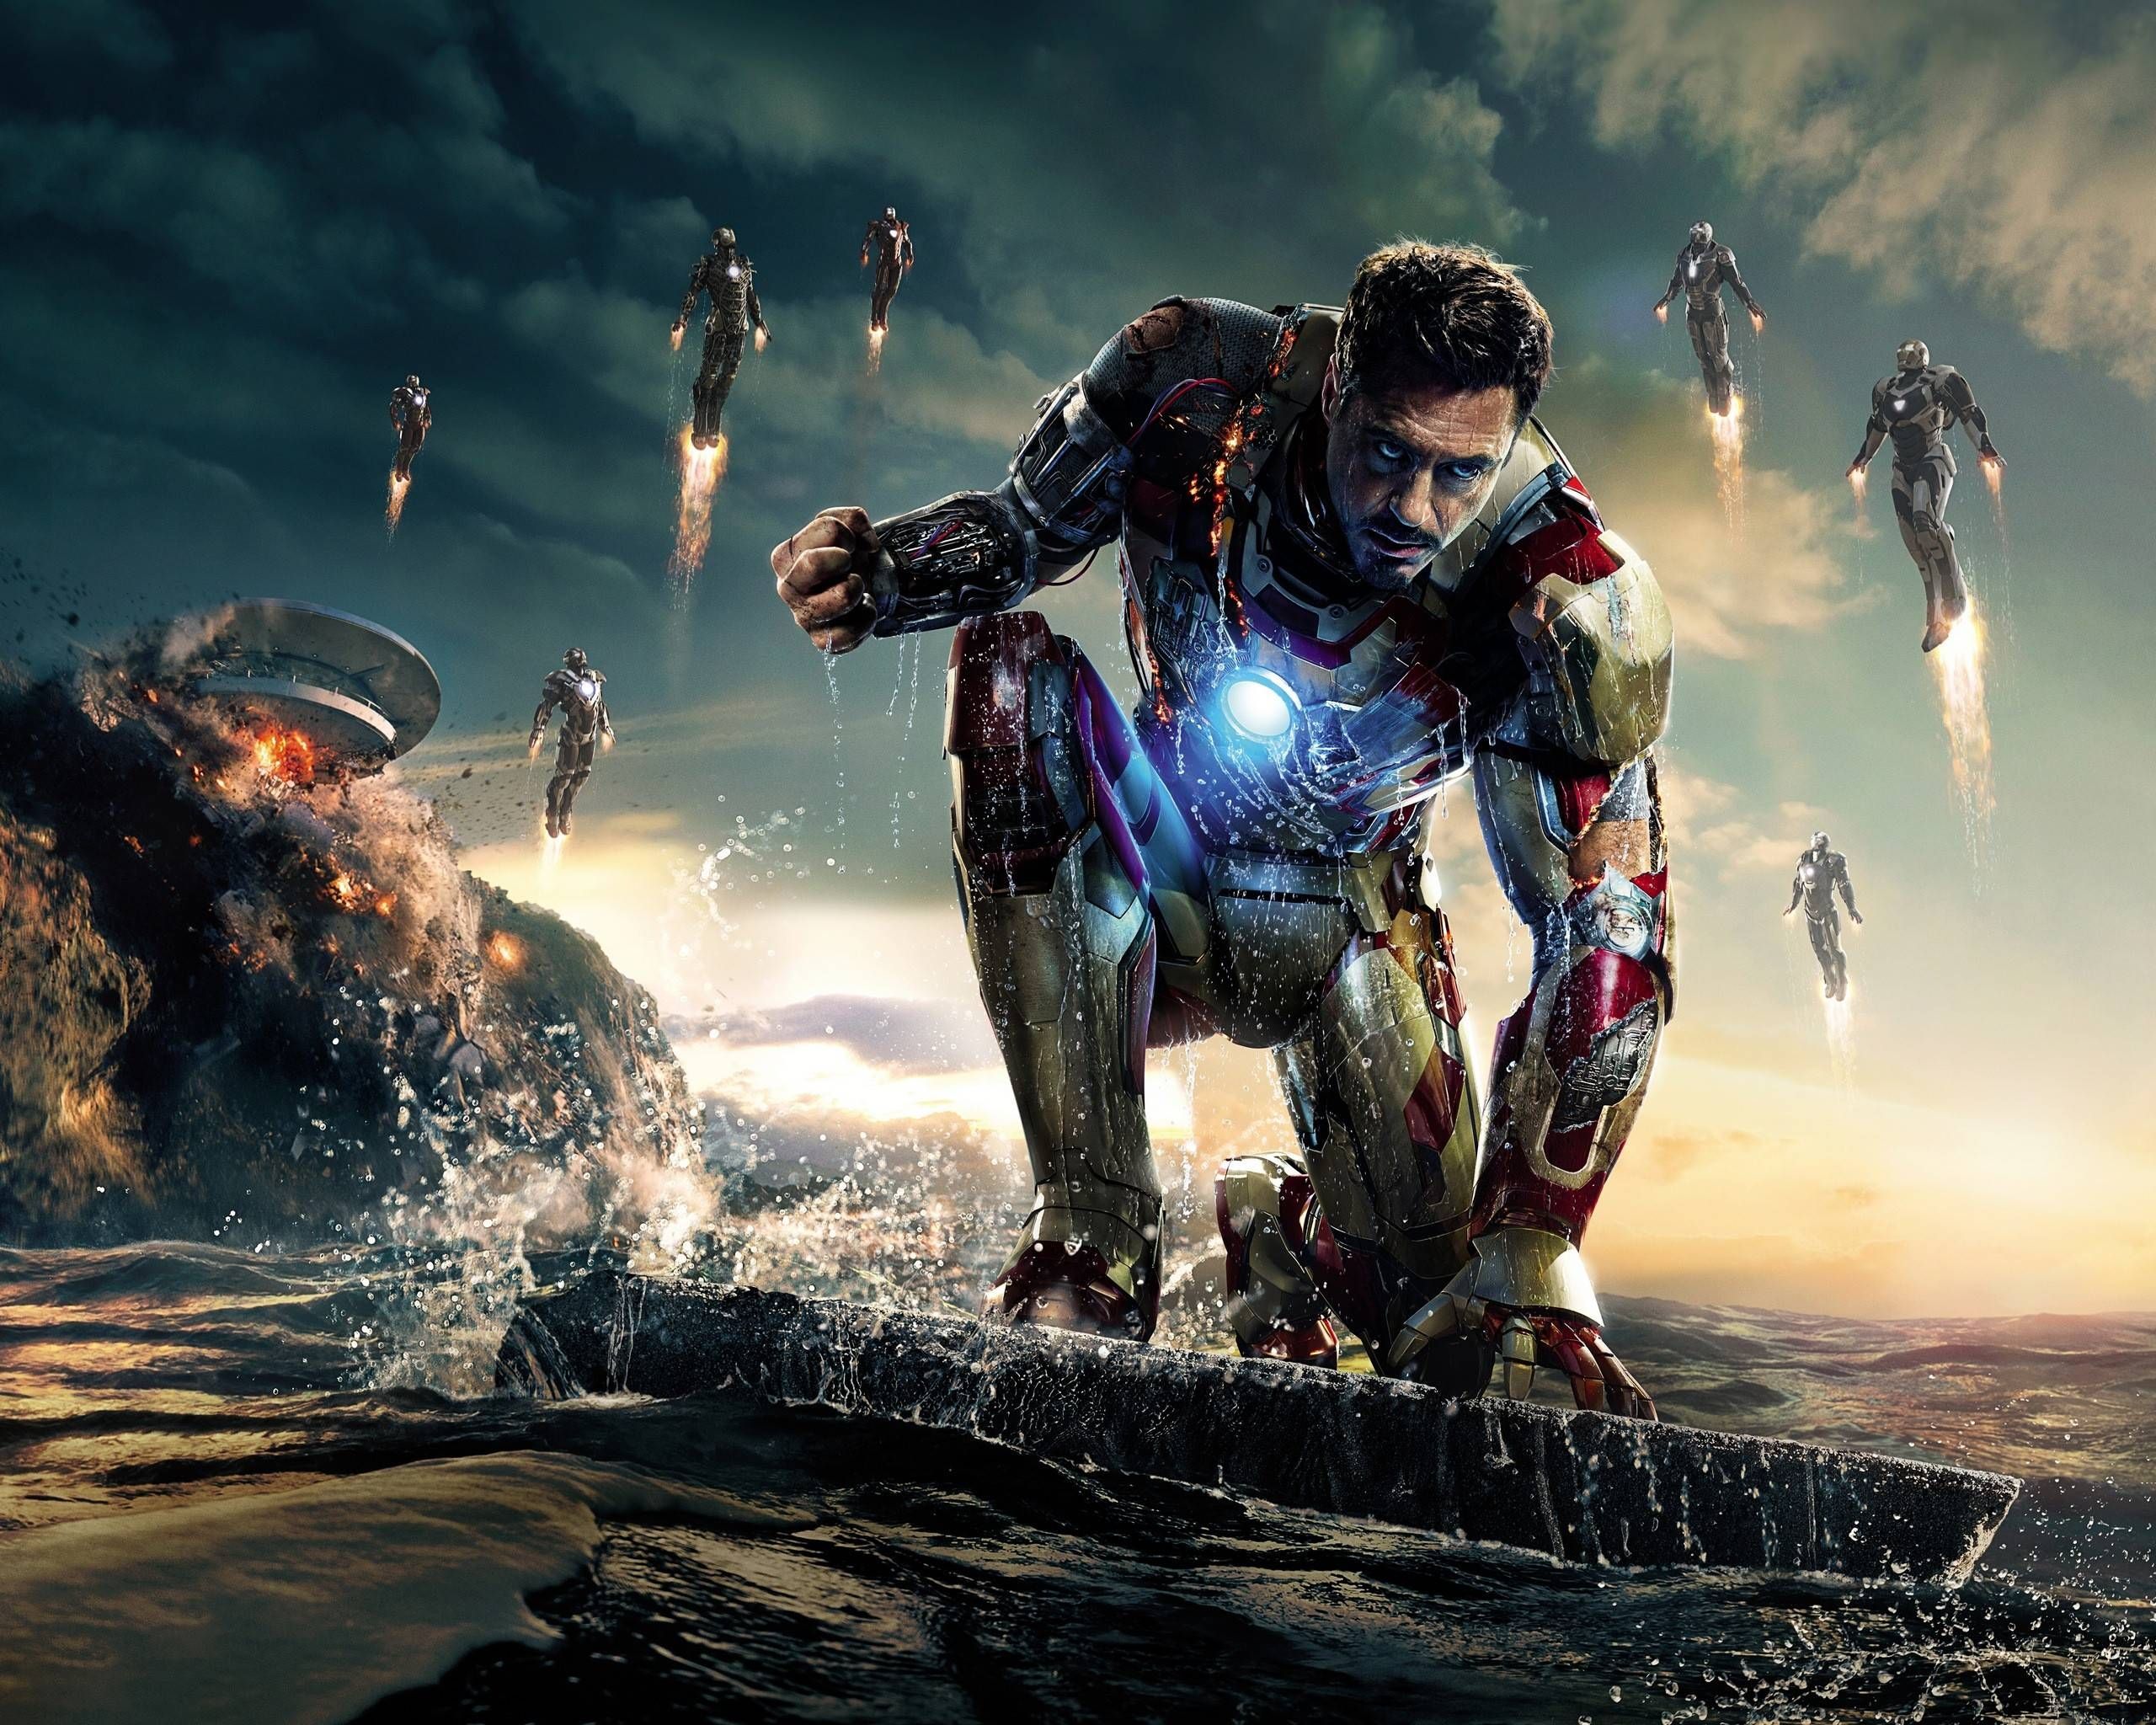 Bạn đang là một fan hâm mộ của Marvel Cinematic Universe và muốn khám phá thêm về Iron Man? Hãy đến với chúng tôi và truy cập vào các thông tin liên quan đến MCU để cập nhật các chi tiết mới nhất về siêu anh hùng này. Hãy sẵn sàng đắm chìm trong những cuộc phiêu lưu đầy kịch tính và hấp dẫn cùng Iron Man.